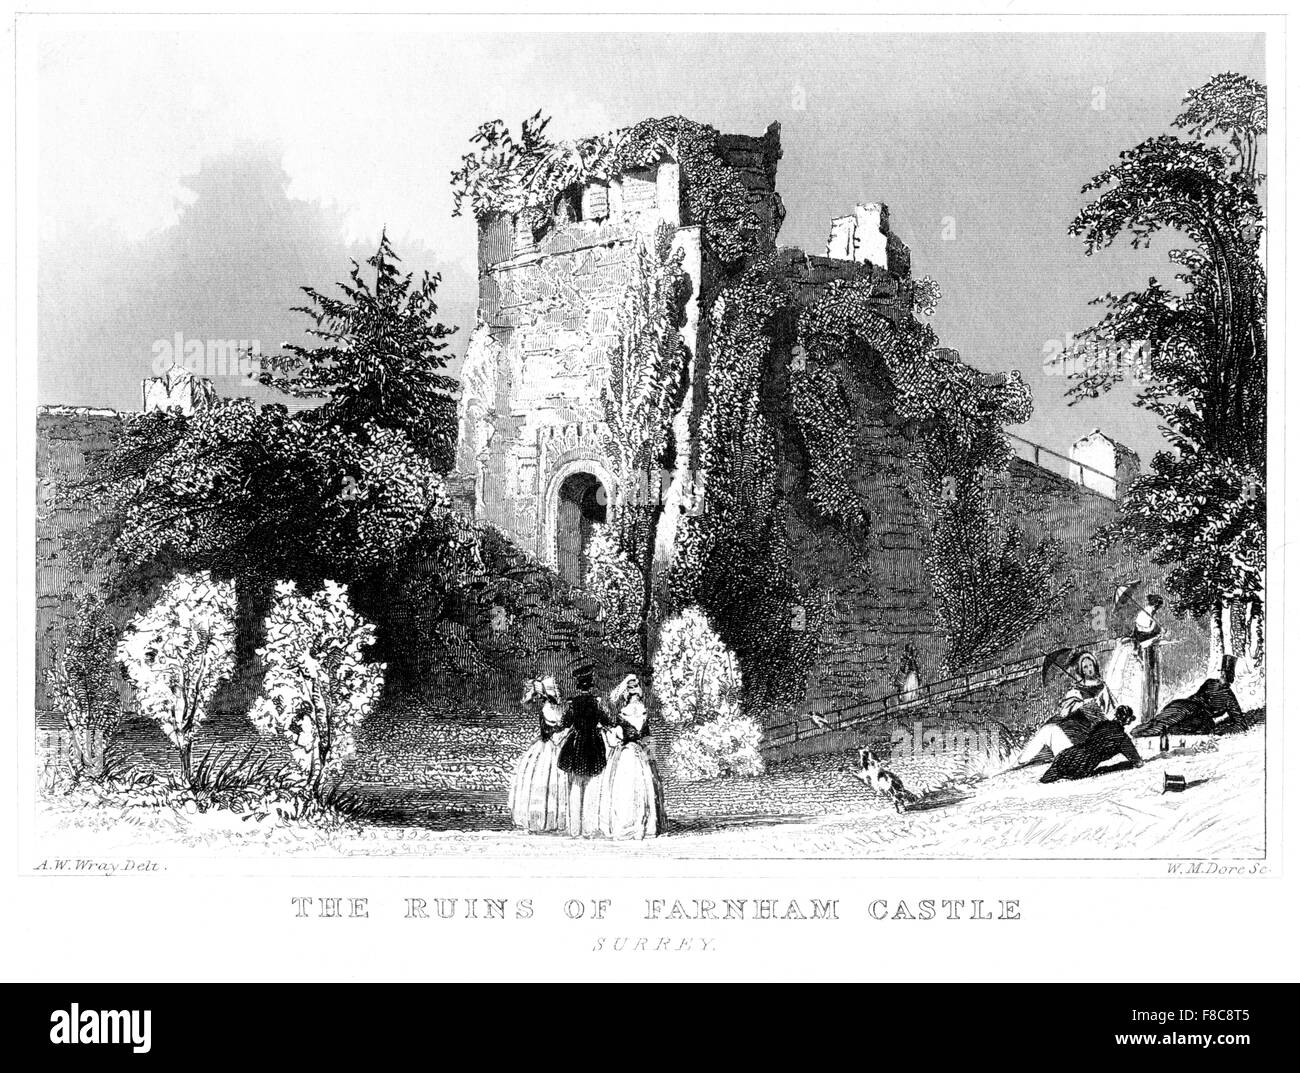 Eine Gravur der Ruinen von Farnham Castle, Surrey, gescannt in hoher Auflösung aus einem Buch, das um 1850 gedruckt wurde. Für urheberrechtlich frei gehalten. Stockfoto